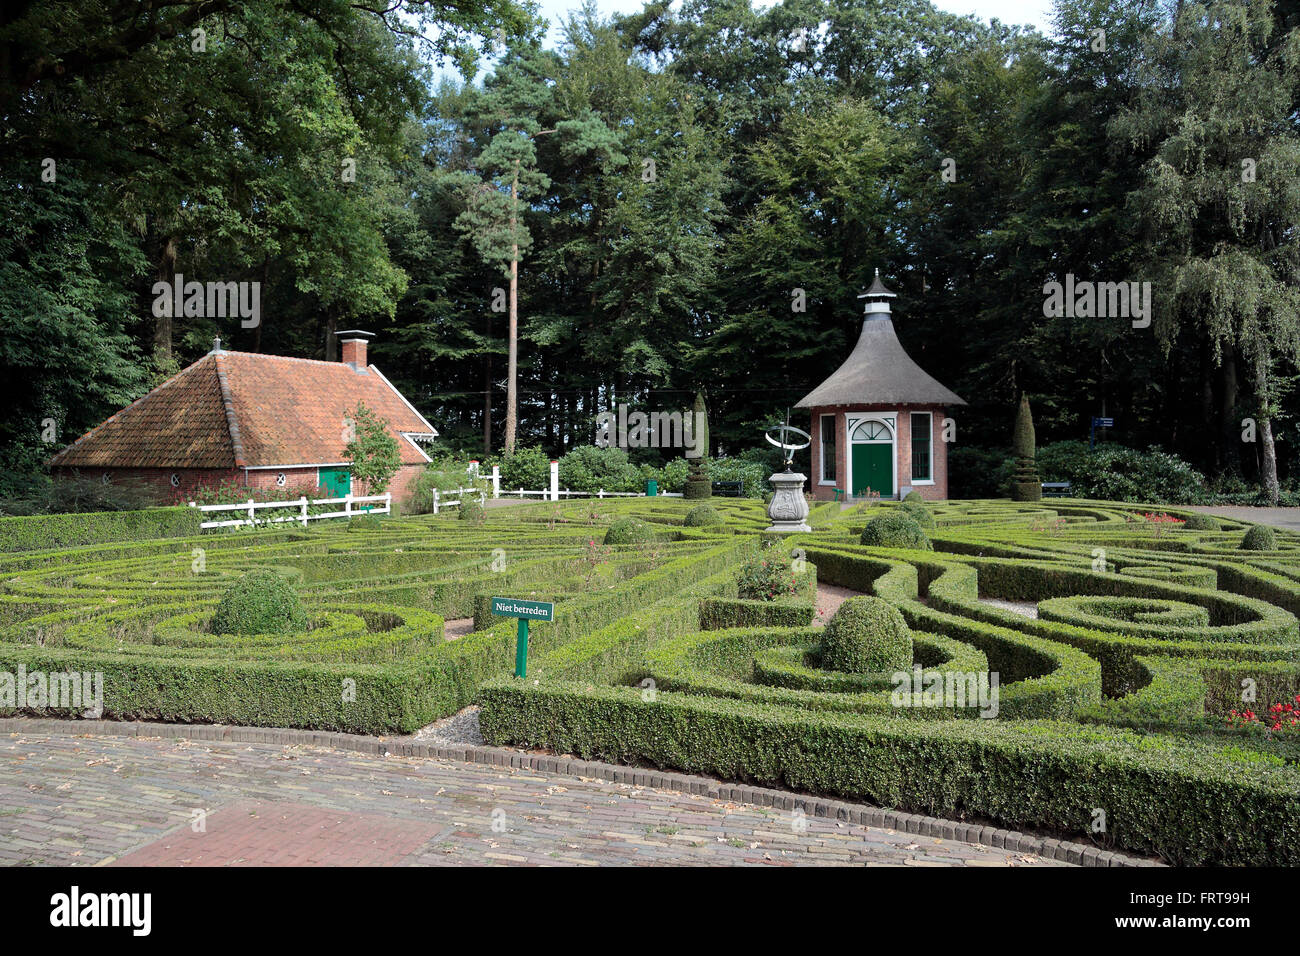 La maison d'été et de jardins de Meppel aux Pays-Bas Open Air Museum (Nederlands Openluchtmuseum), Pays-Bas. Banque D'Images